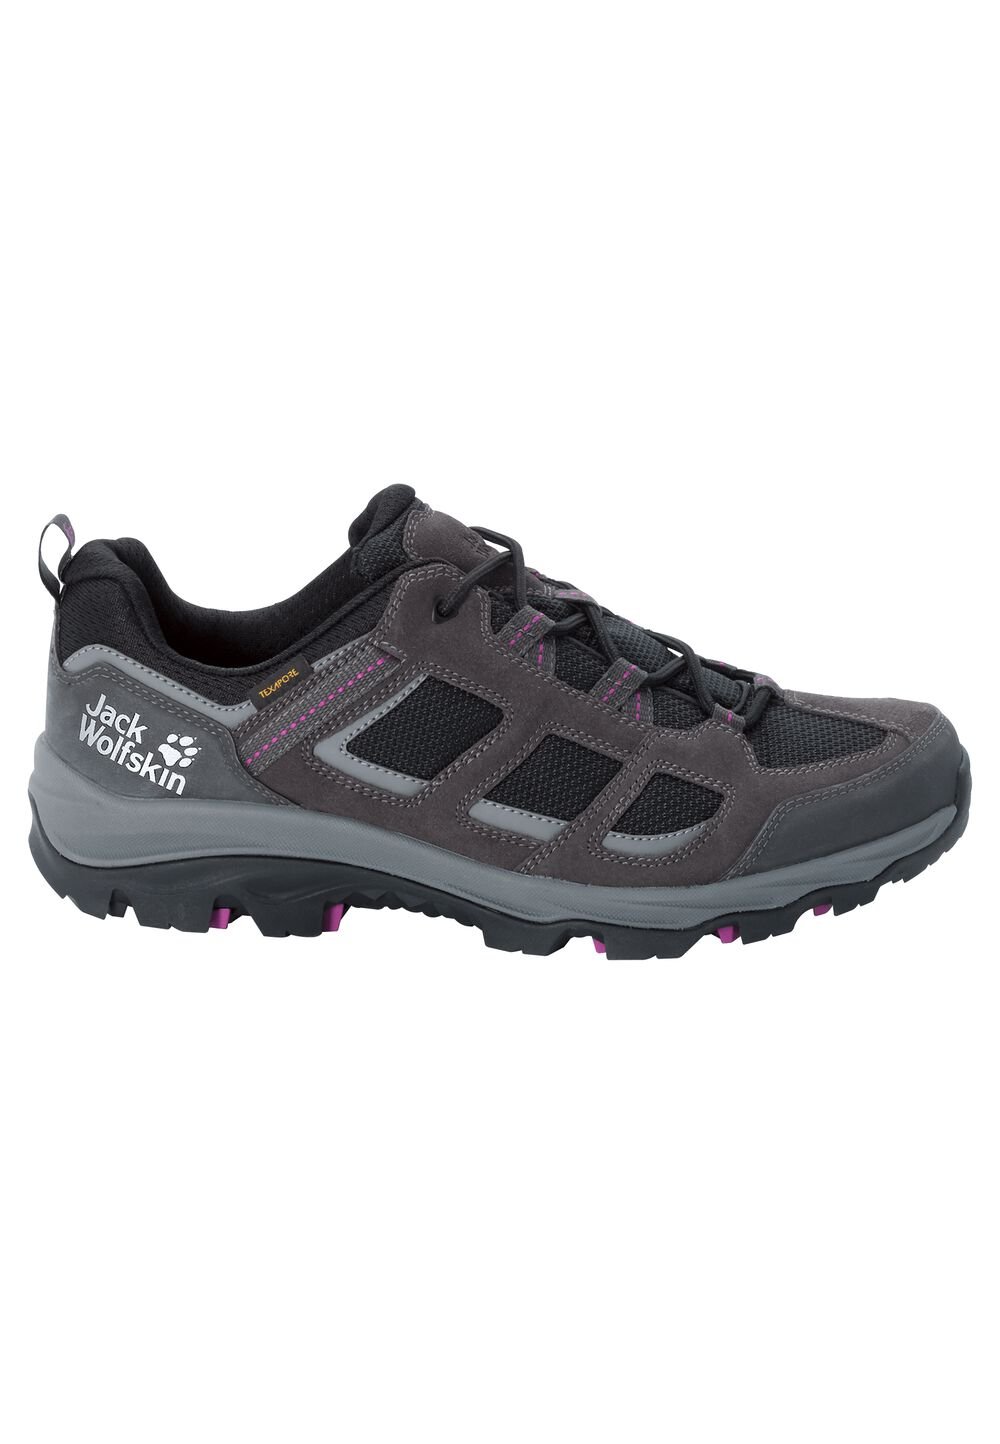 Chaussures de randonnée imperméables femmes Vojo 3 Texapore Low Women 5,5 gris dark steel / purple